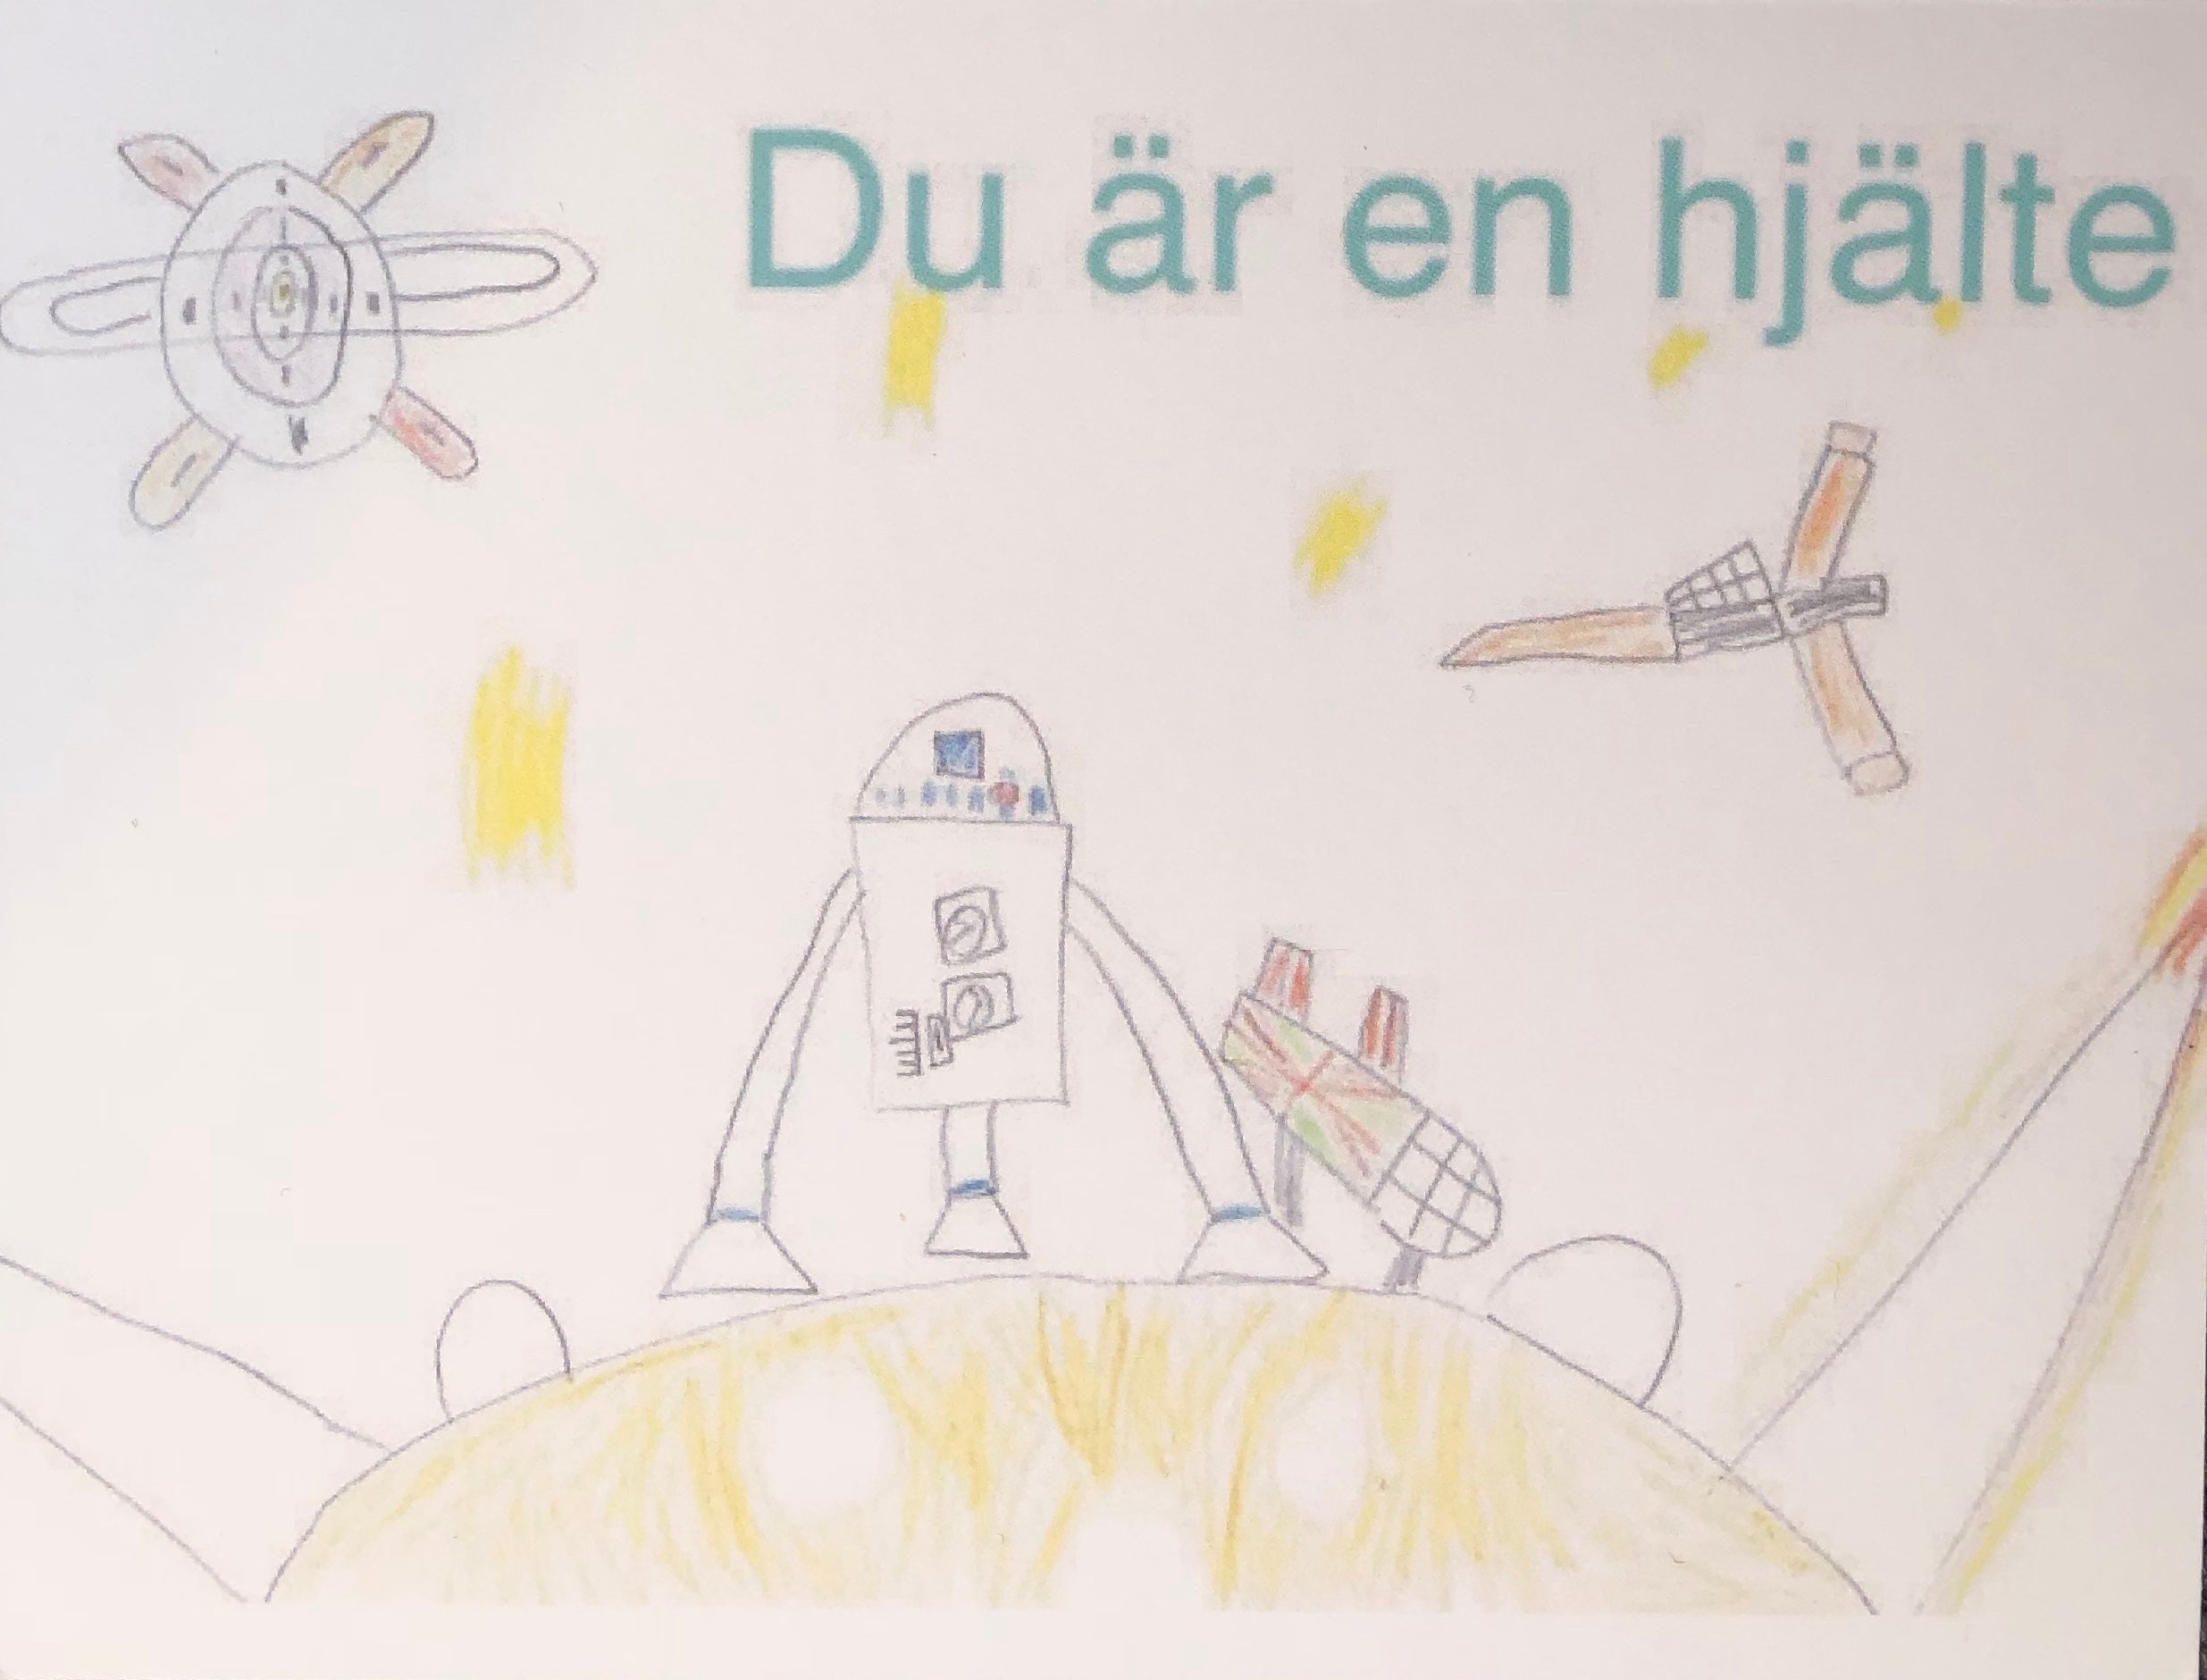 Ett kort skapat av våra unga konstnärer, med texten "Du är en hjälte". Motivet är en raketer och rymdfarkoster.